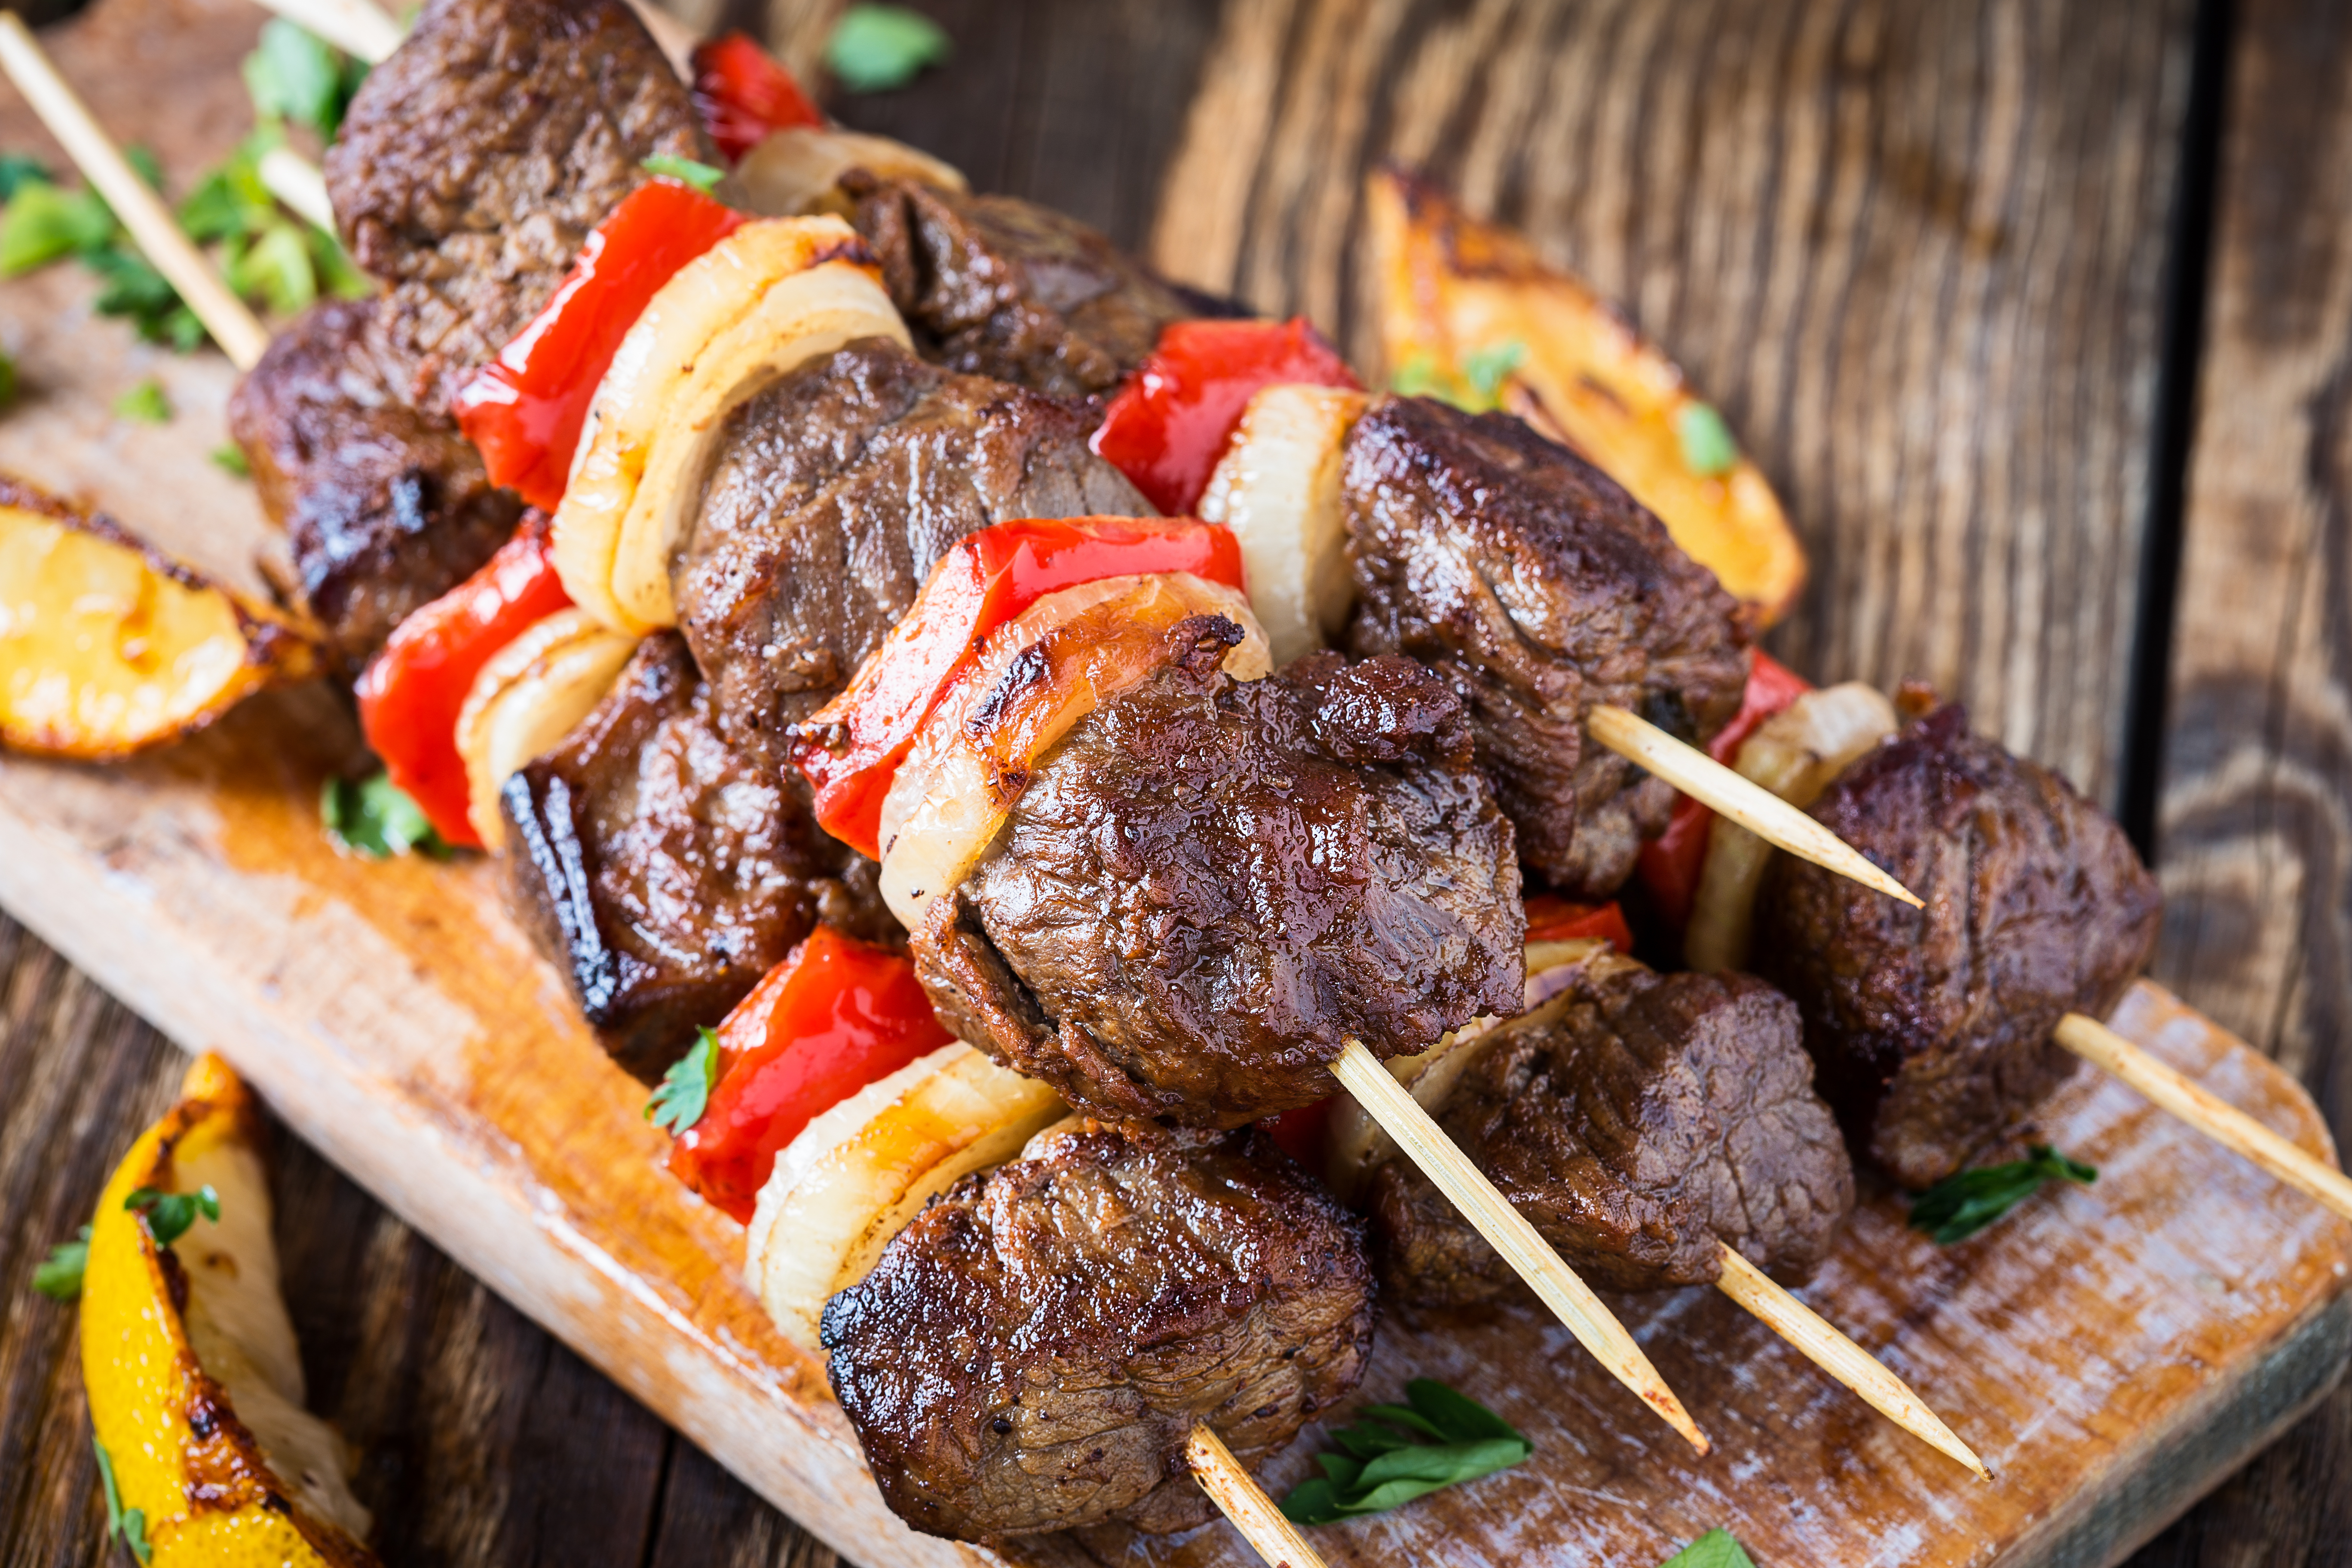 Shish es la variedad de kebab más famosa de Turquía. Consiste en trozos de carne adobados, insertados en una brocheta y asados a la parrilla. Los adobos incluyen ingredientes como el zumo de limón, aceite de oliva, leche, yogur, canela, pimienta de Jamaica y otras especias. El shish kebab se sirve con verduras a la parrilla como tomates o trozos de pimiento, aunque estas verduras nunca se ensartan ni se cocinan con la carne, sino que se cocinan por separado, para que cada una se cocine durante su tiempo adecuado.